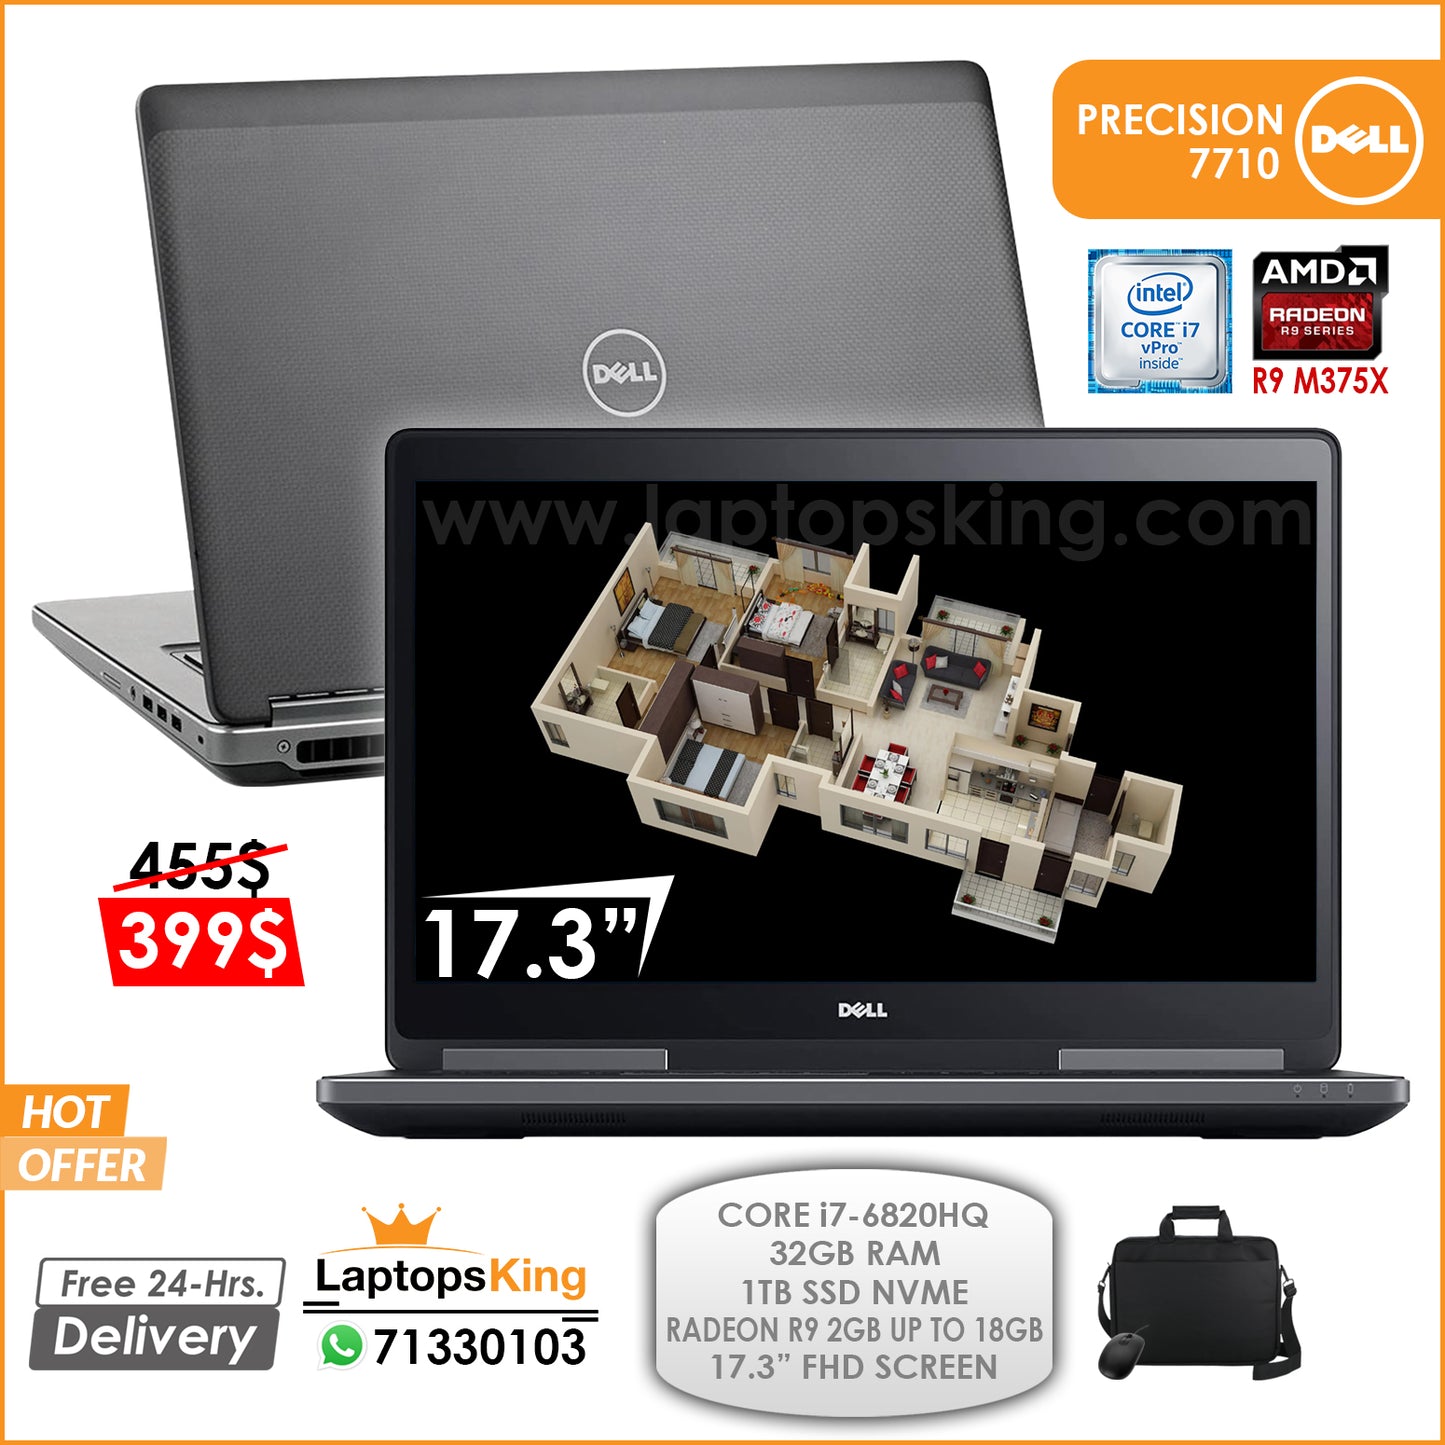 Dell Precision 7710 Mobile Workstation Core i7-6820HQ Radeon R9 M375X 17.3" Laptop Offer (Open Box)